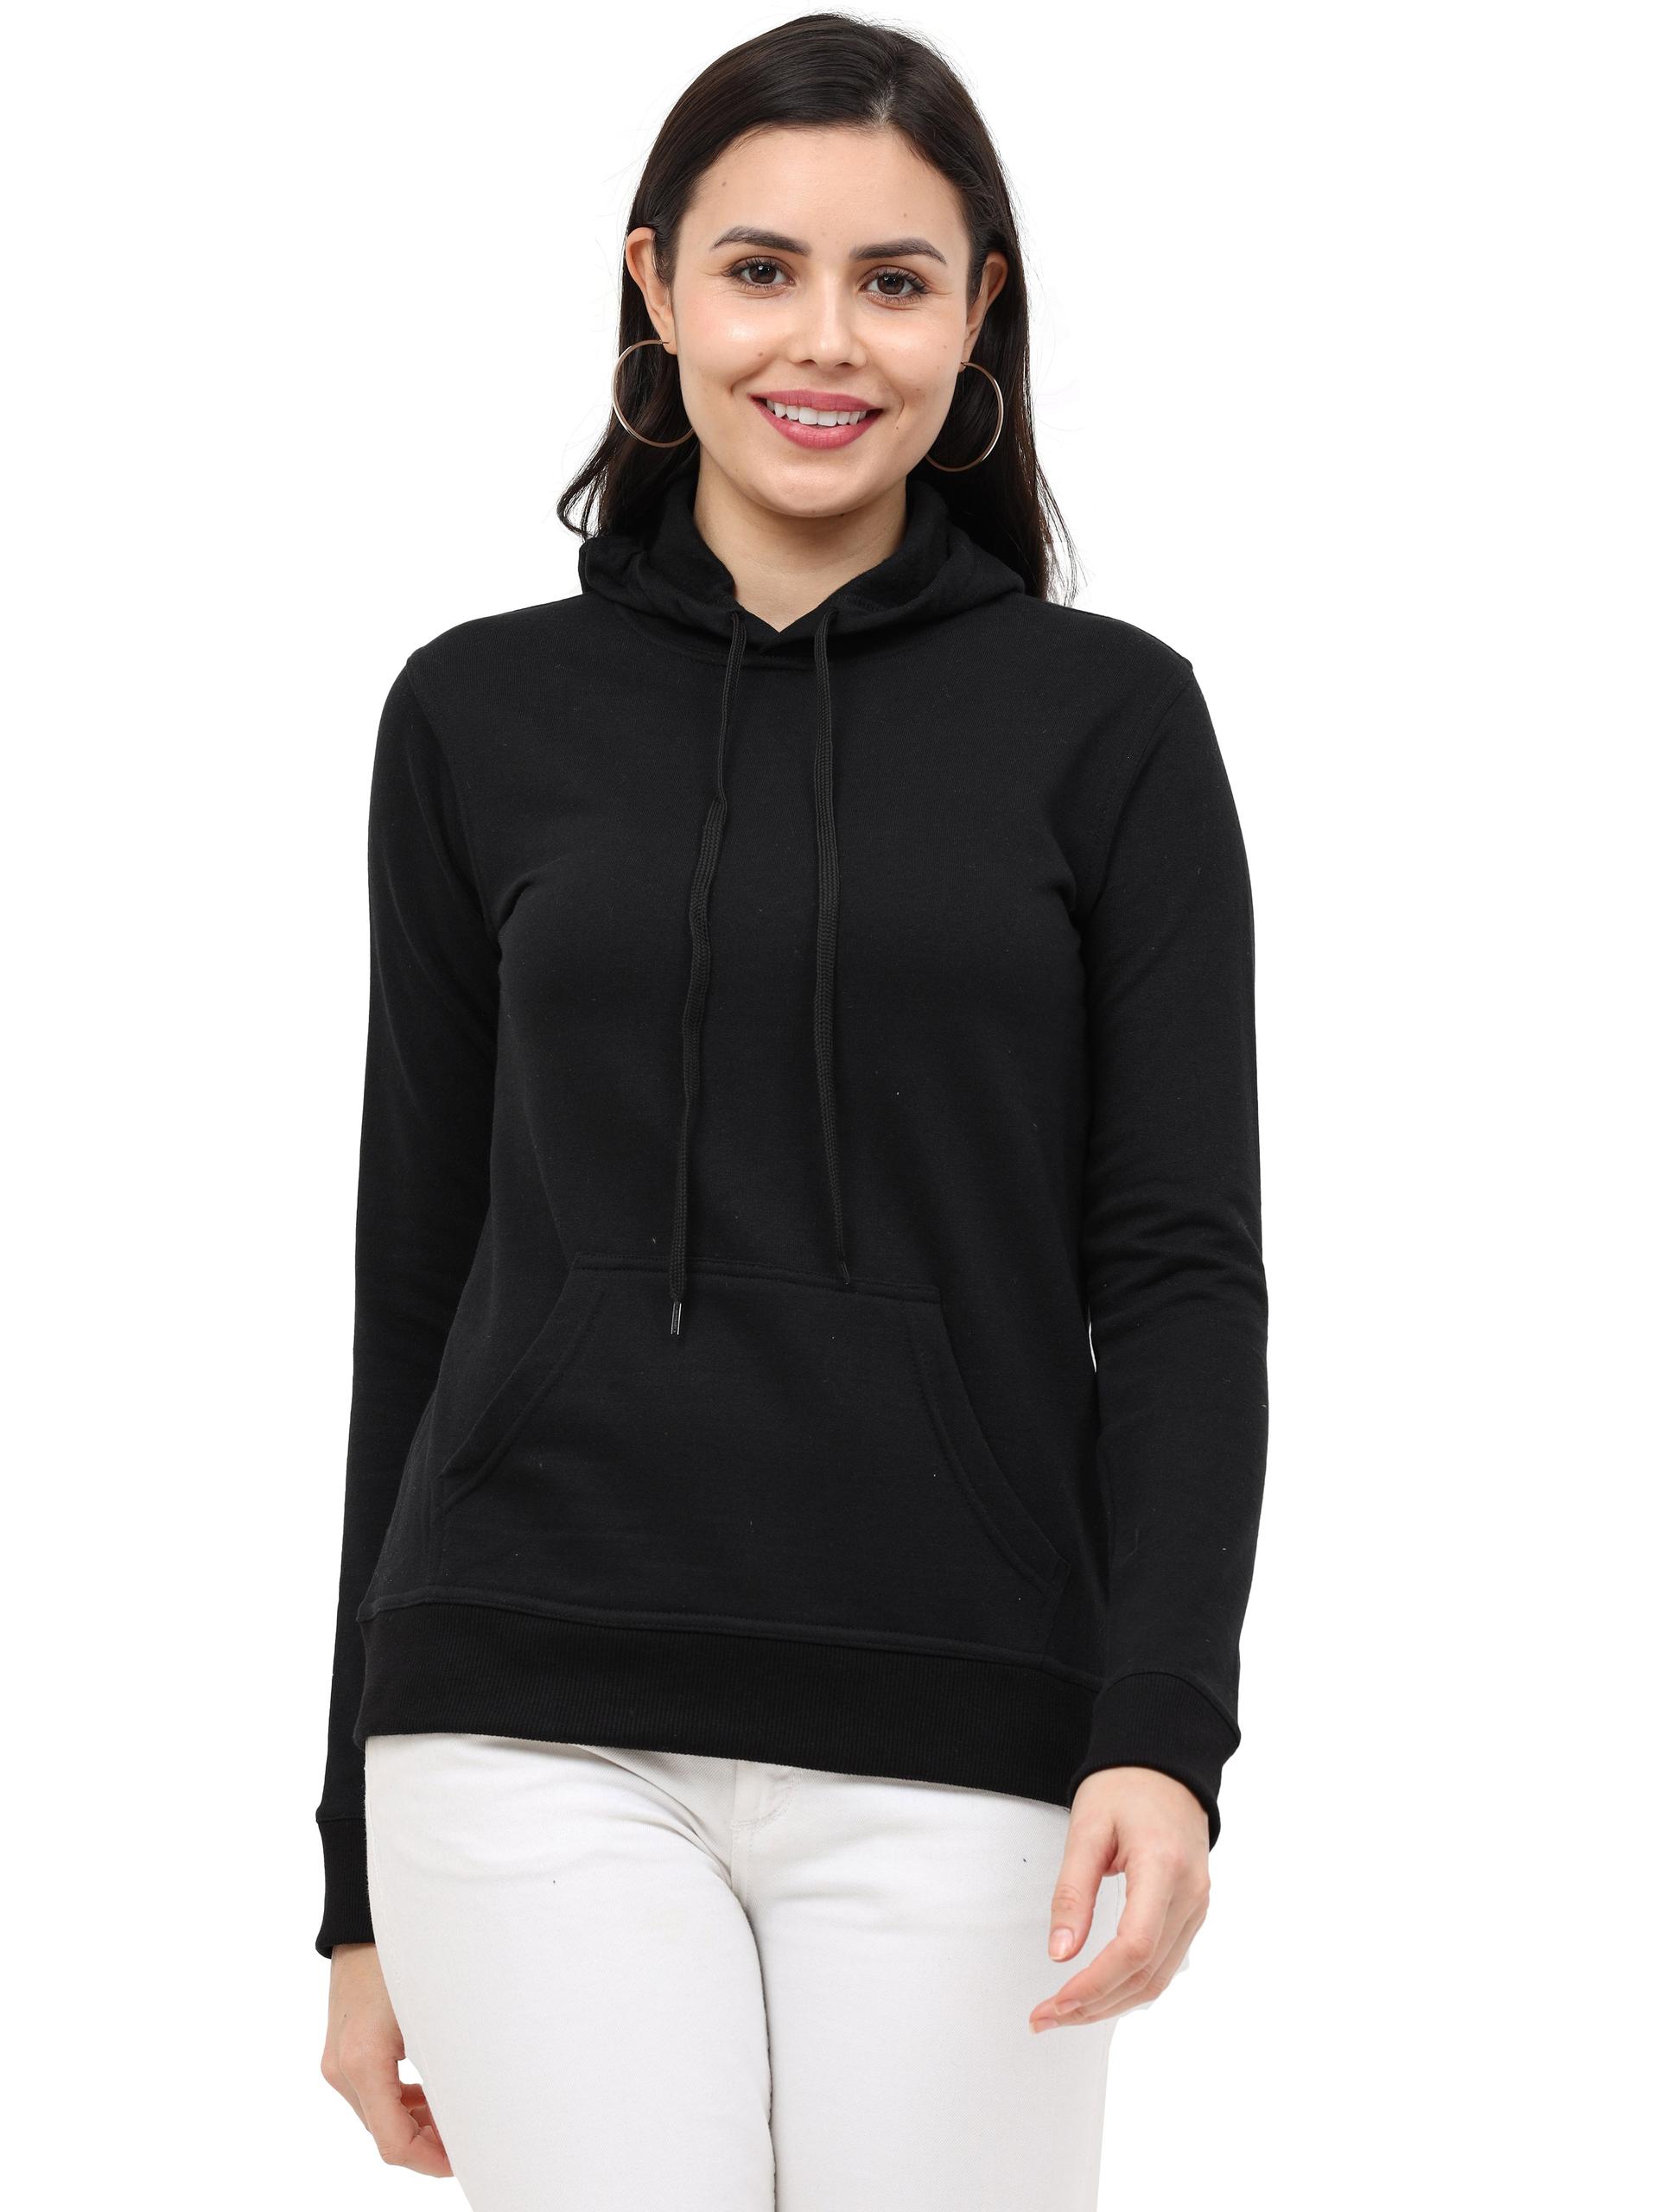 Women's Cotton Plain Black Color Sweatshirt Hoodies